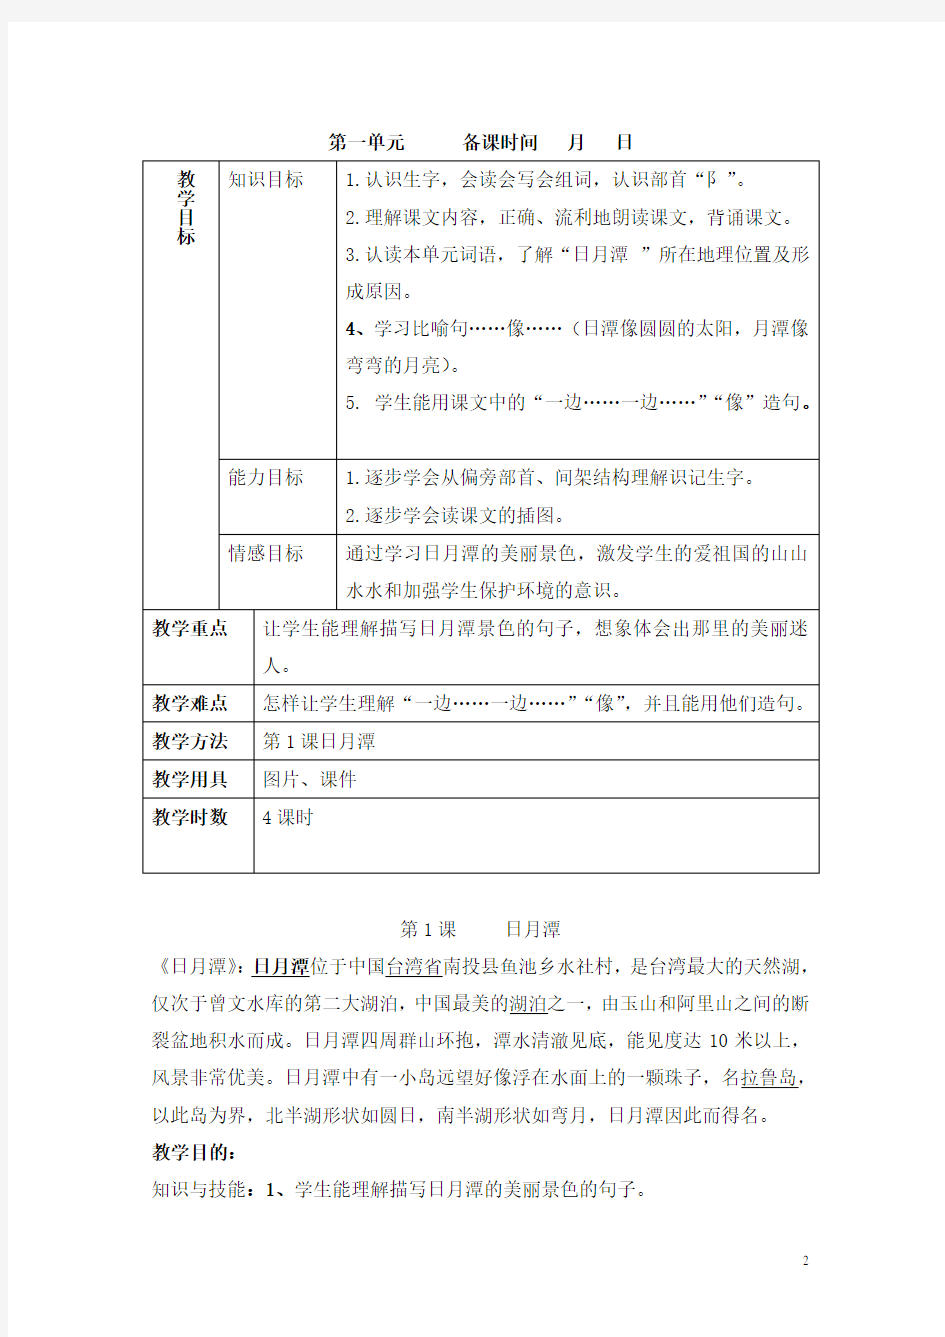 上海培智实用语文教材十二册教案